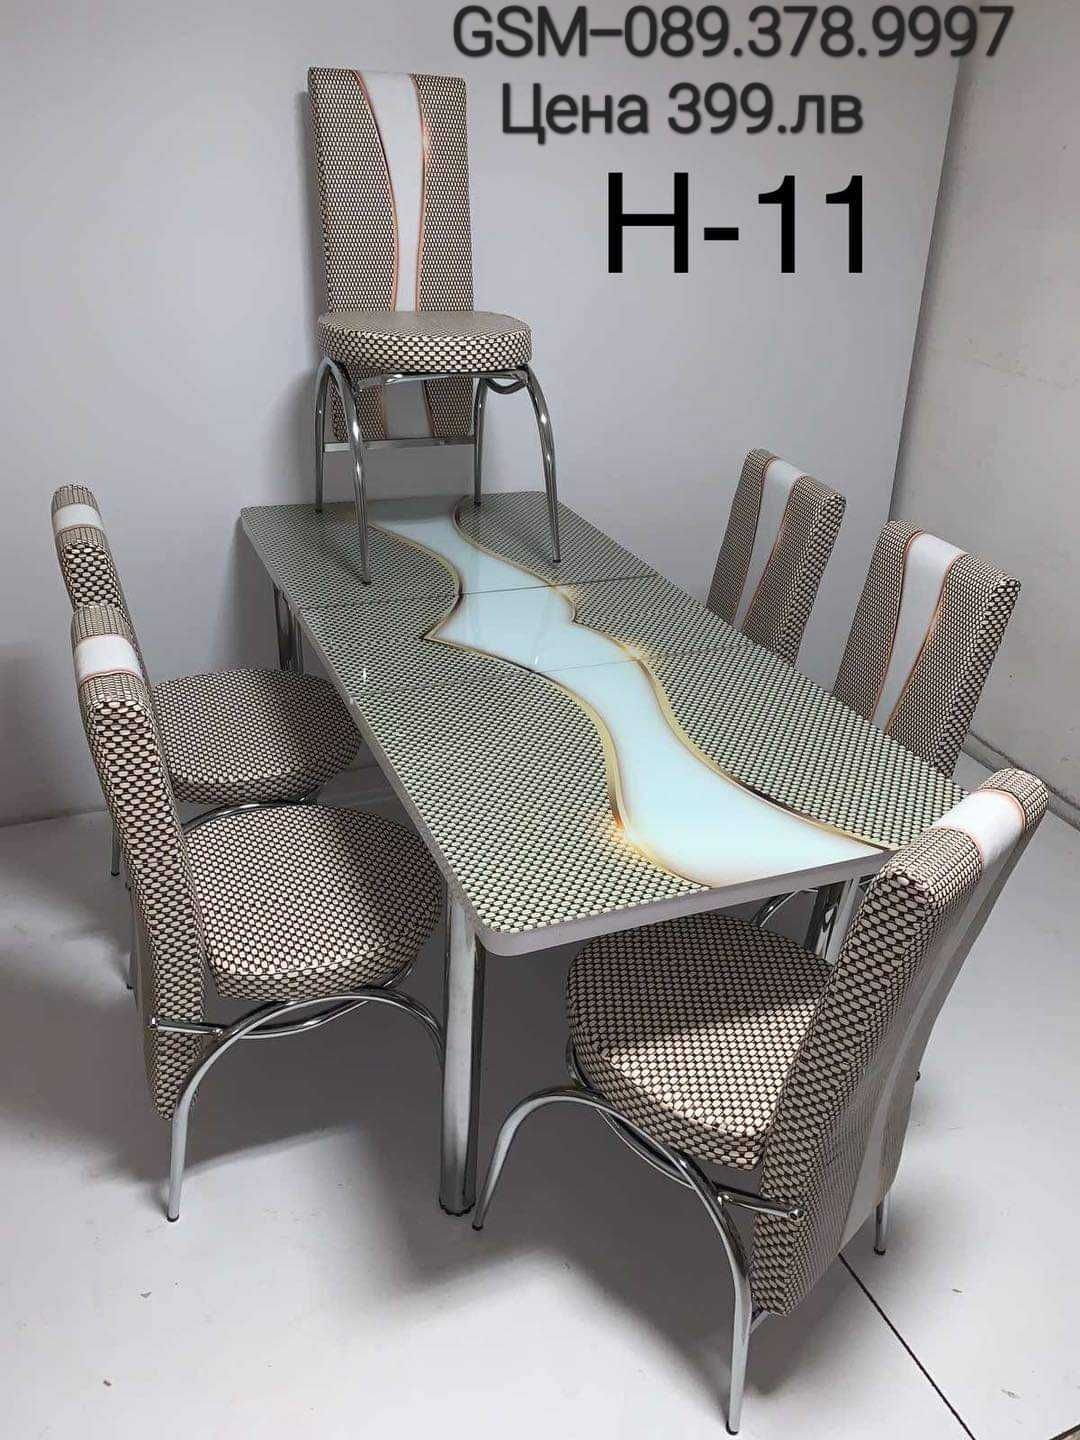 Турски трапезни маси с 6 стола подходящи за всеки дом НОВА Цена 399.лв